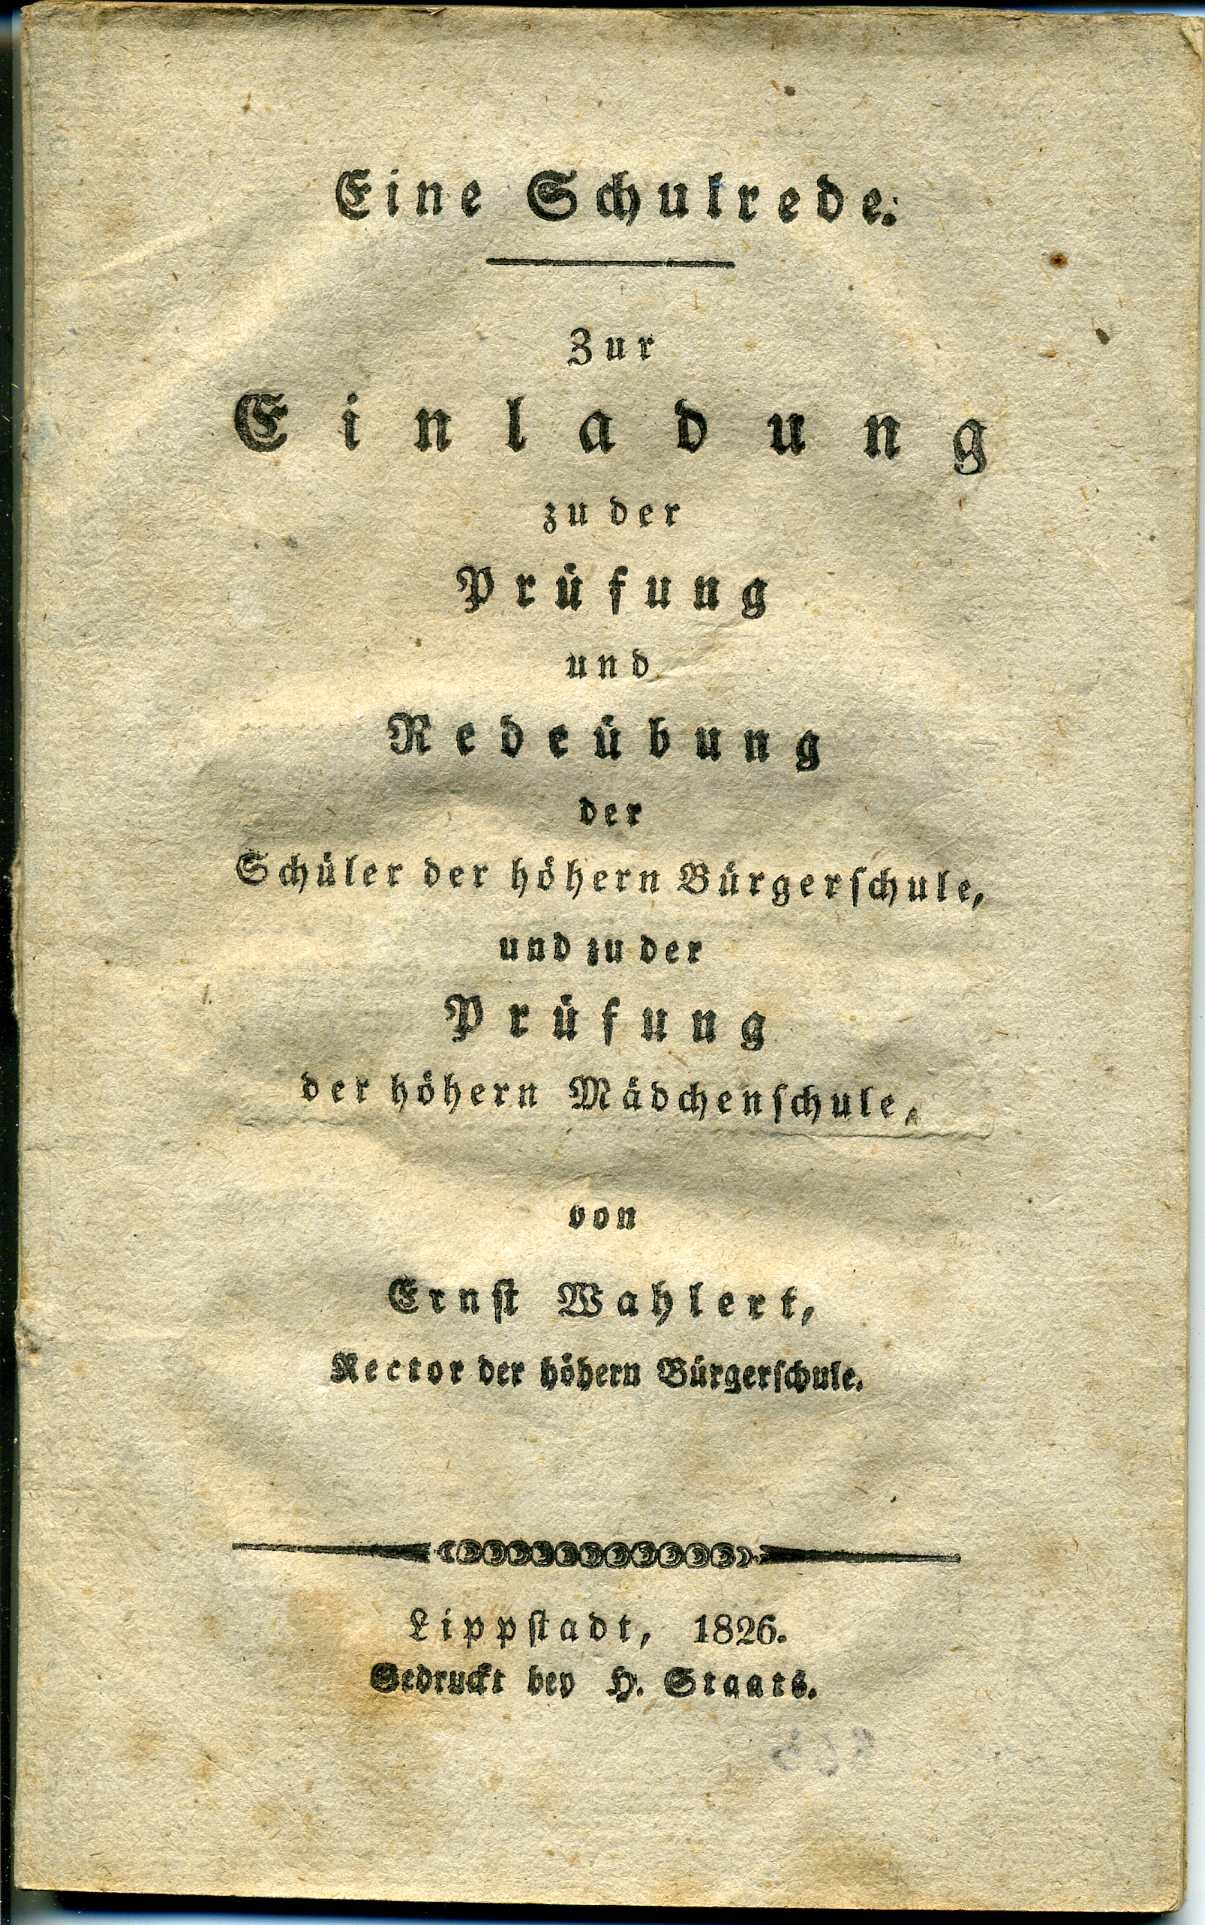 Heft einer Schulrede von Georg Ernst Adam Wahlert (Stadtmuseum Lippstadt RR-F)